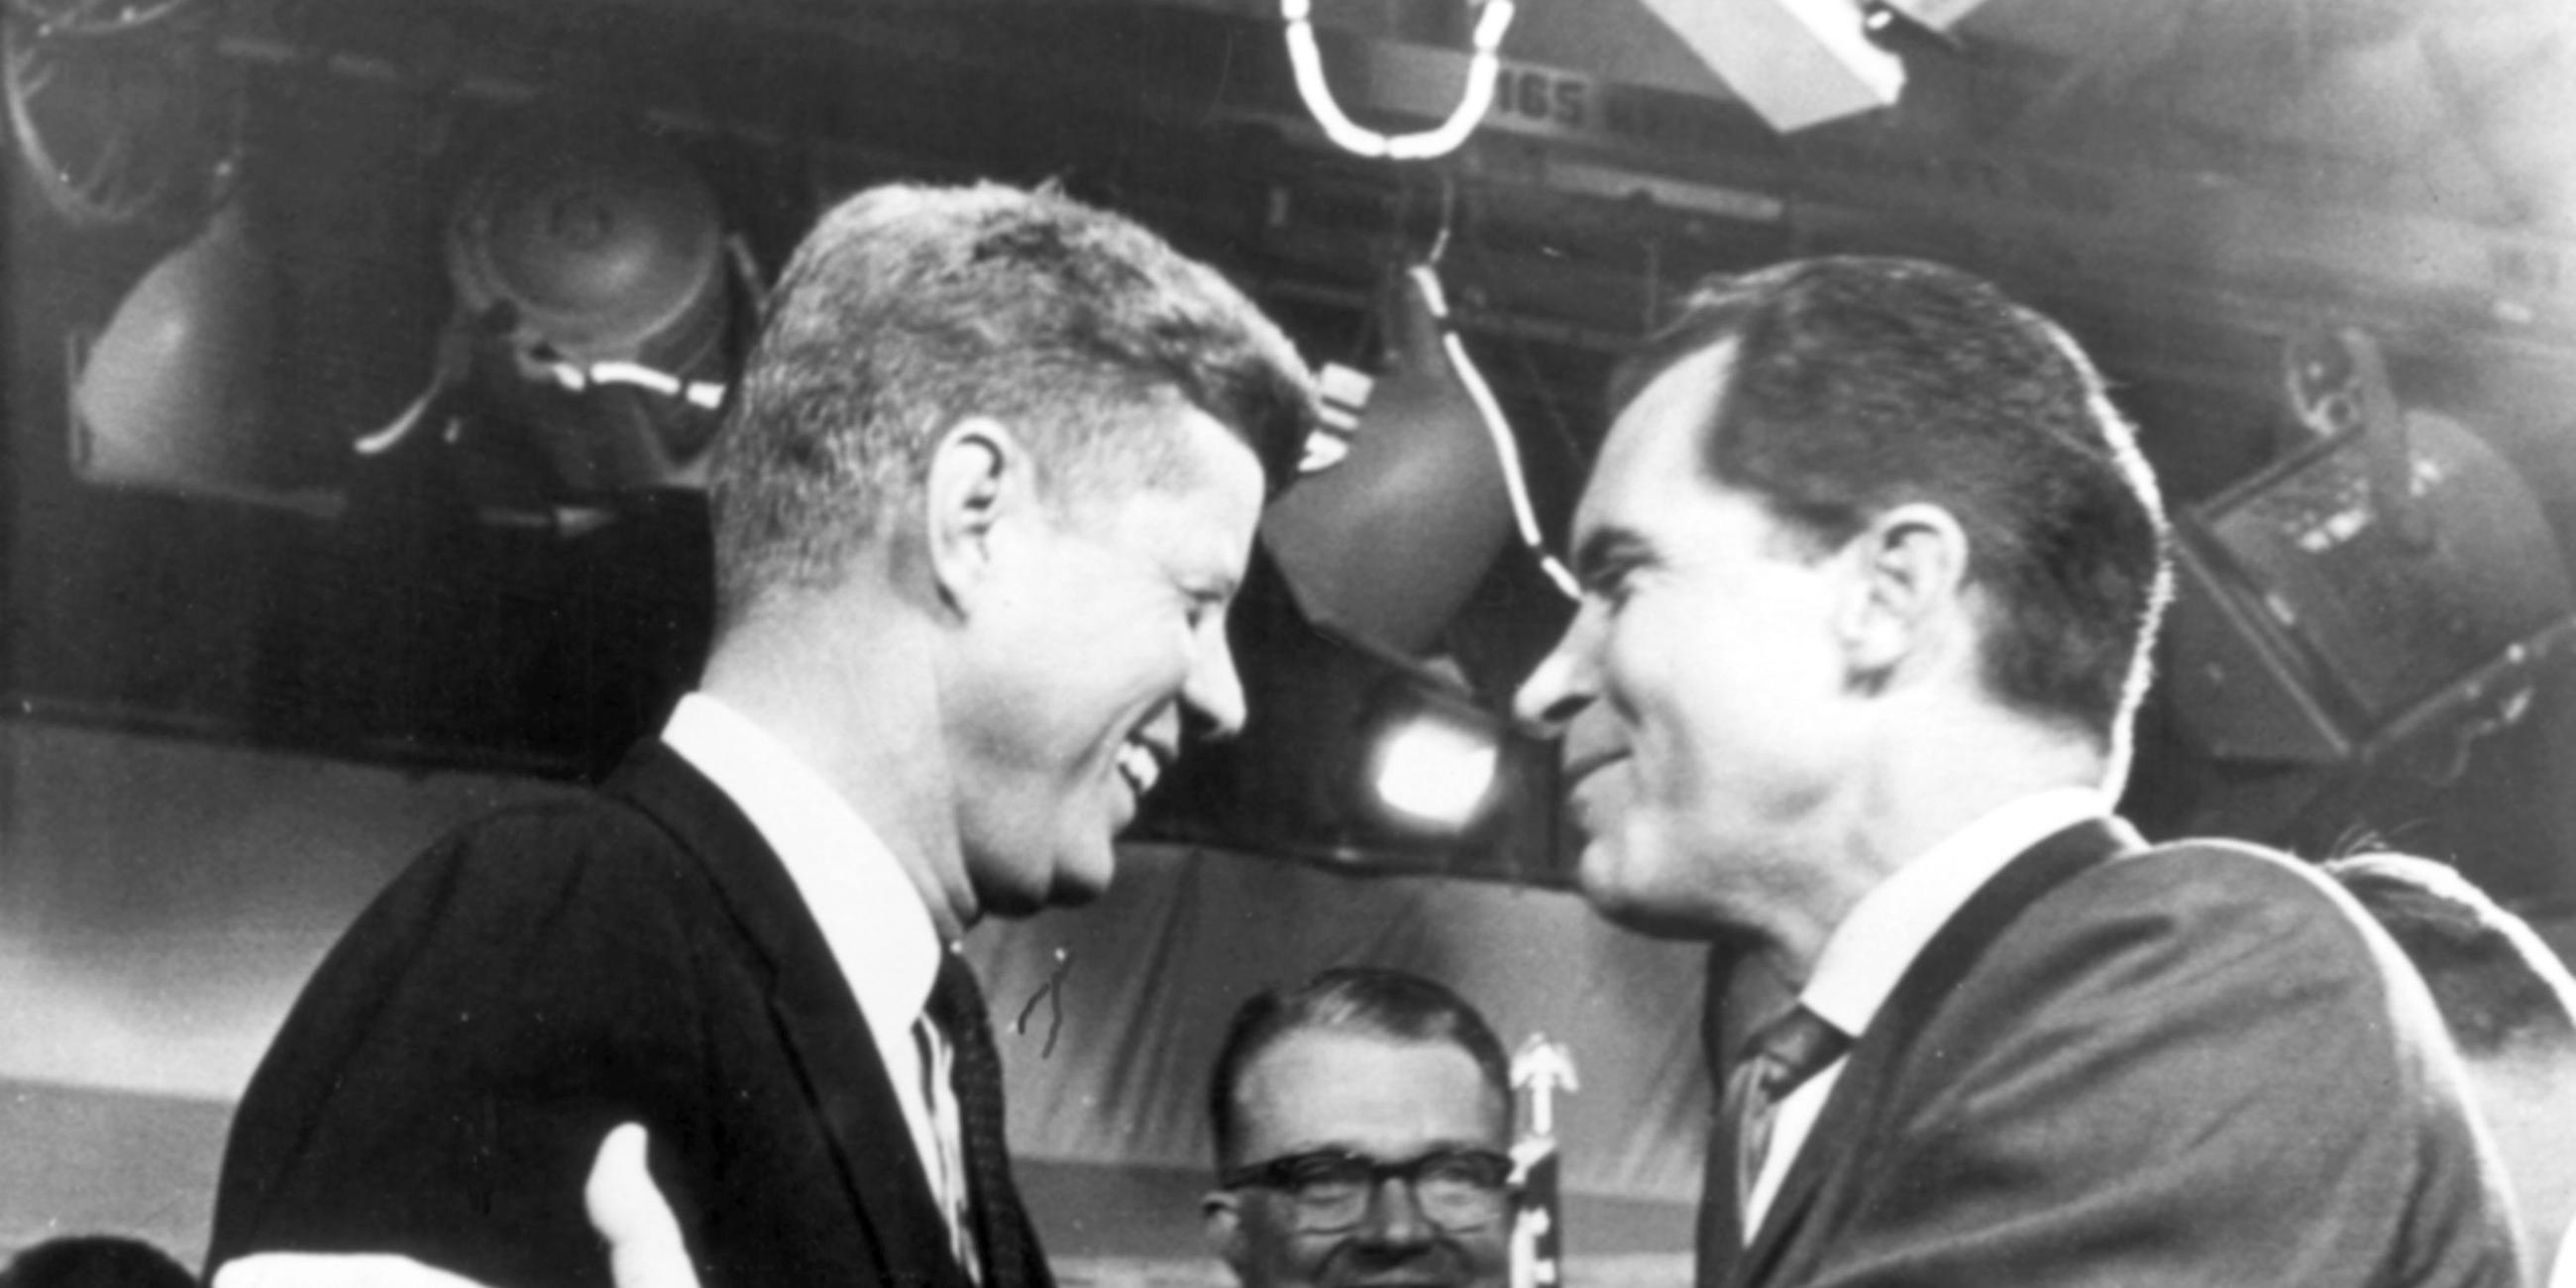 Die Präsidentschaftskandidaten Richard Nixon (Republikaner) und John F. Kennedy (Demokraten) nach dem Fernsehduell am 7. Oktober 1960.